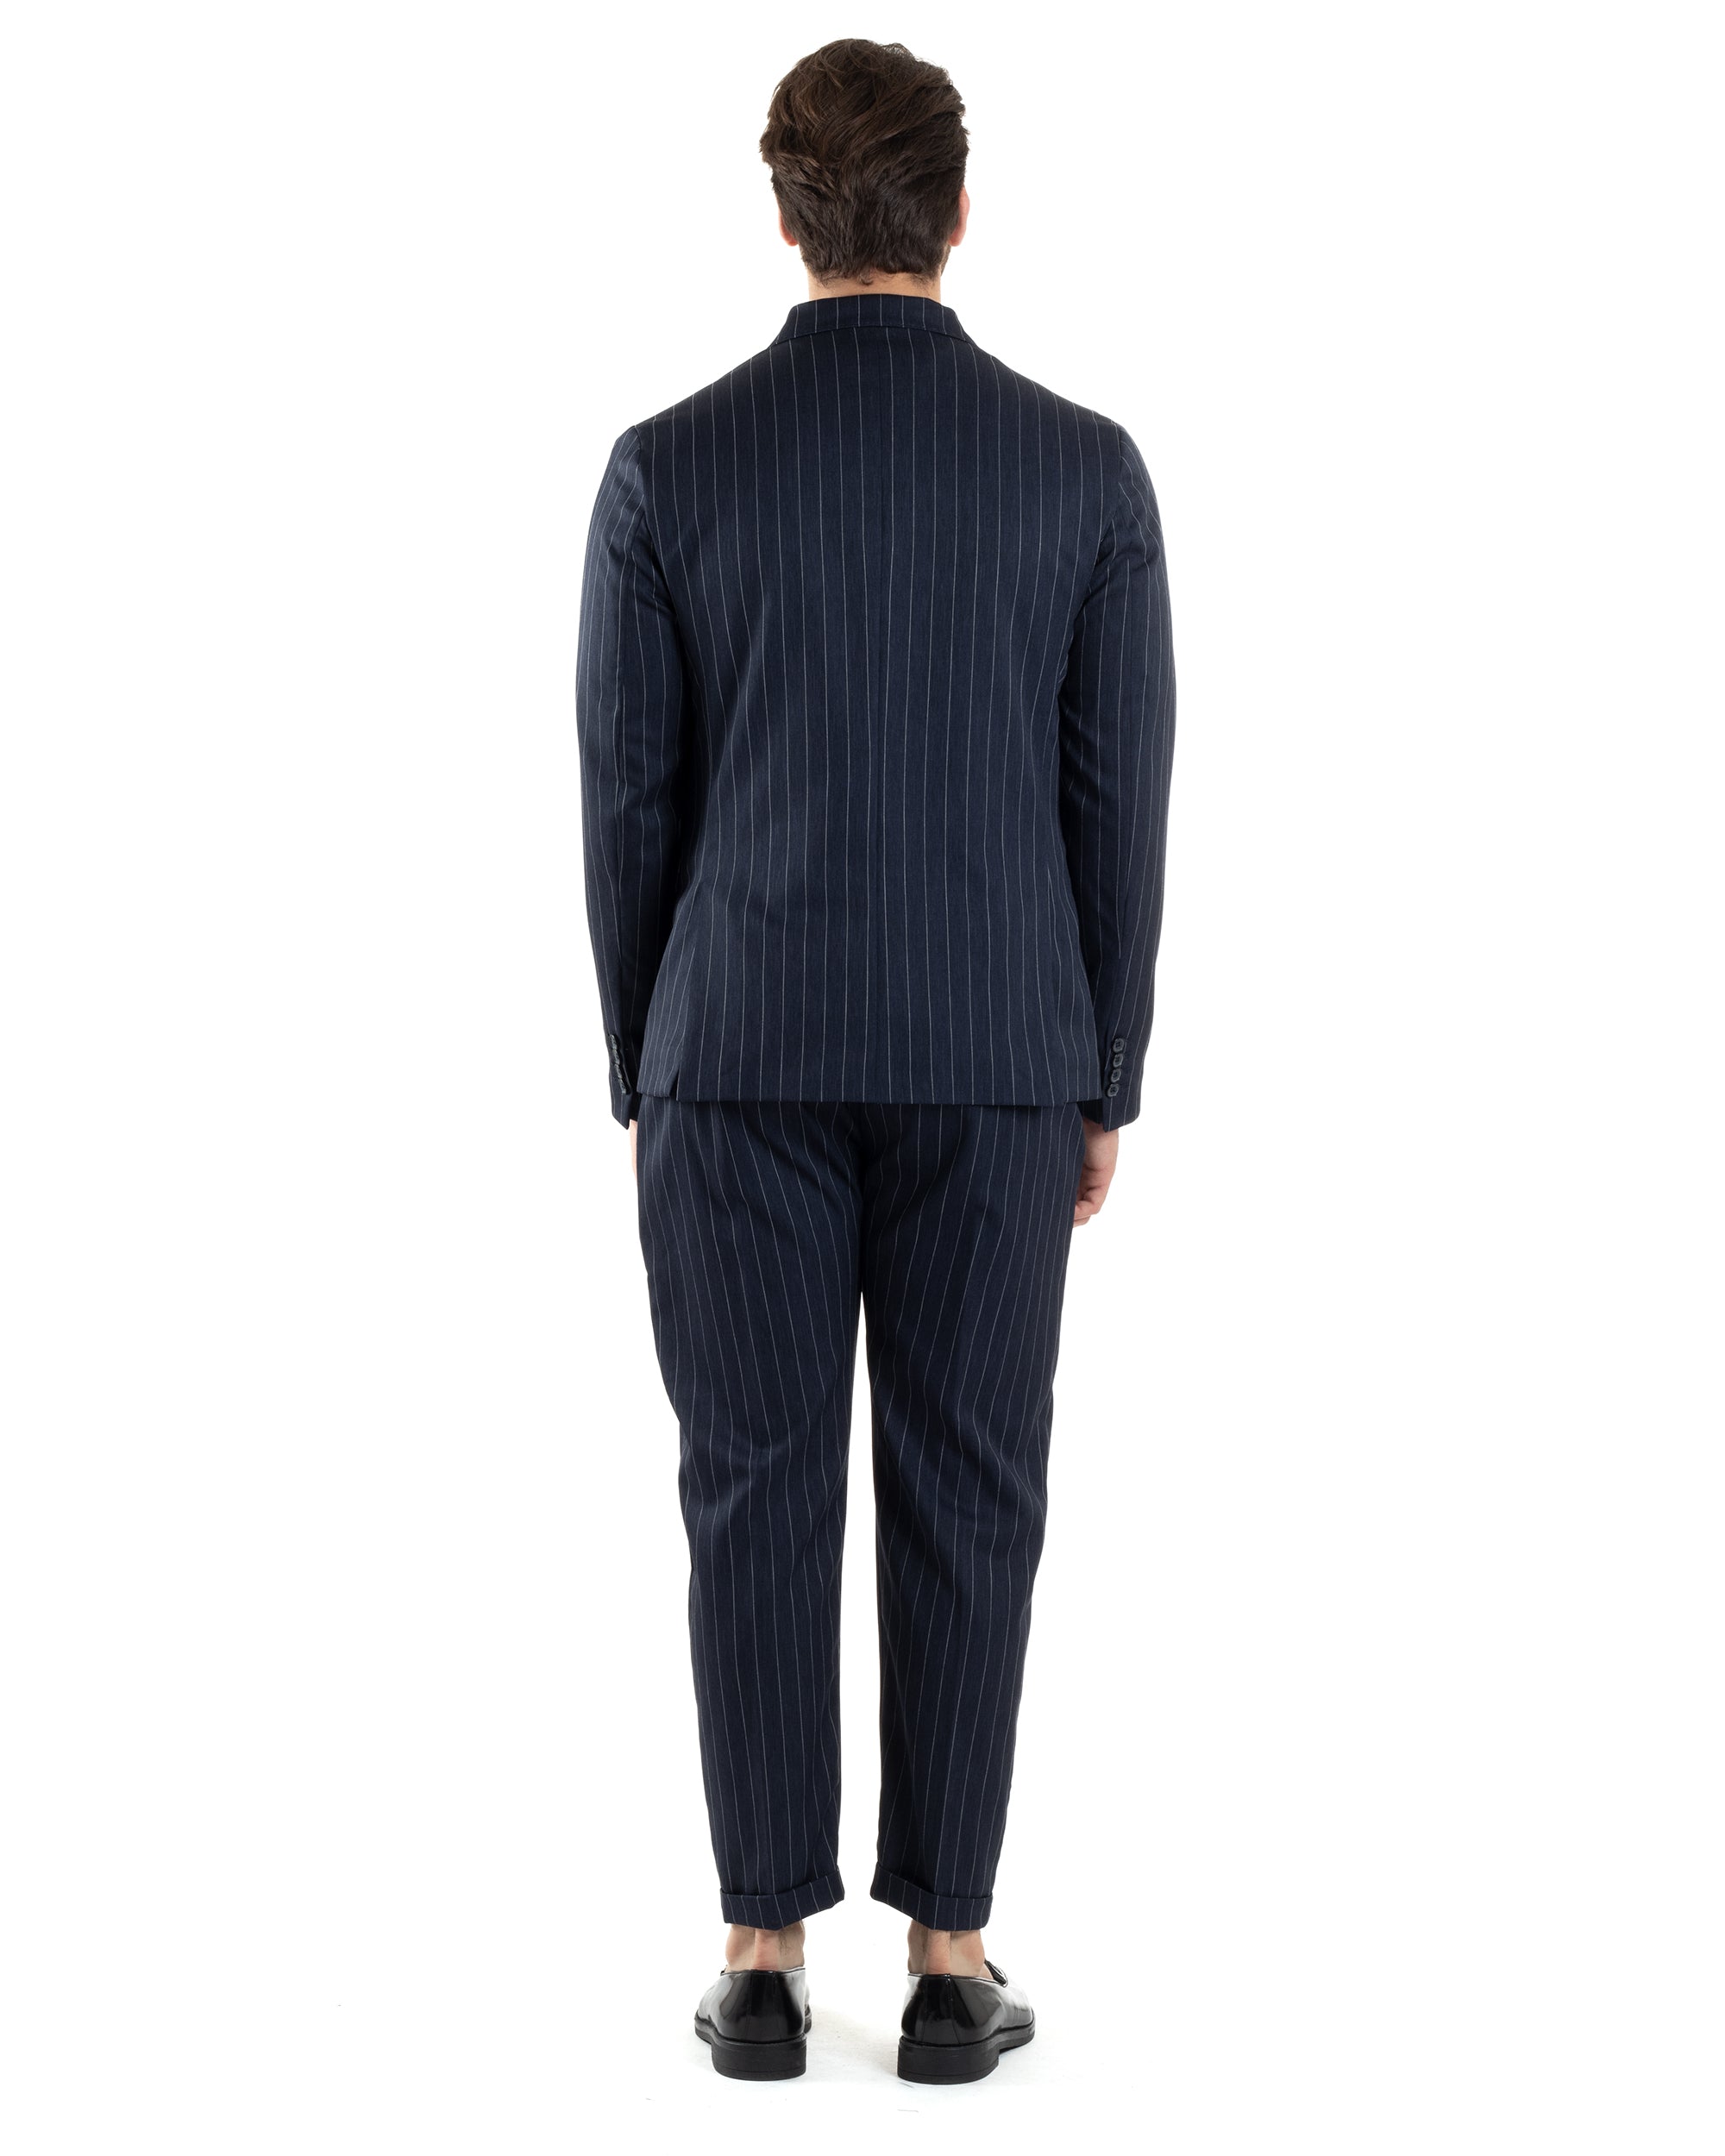 Abito Uomo Doppiopetto Vestito Completo Giacca Pantaloni Blu Gessato Elegante Casual GIOSAL-AE1053A